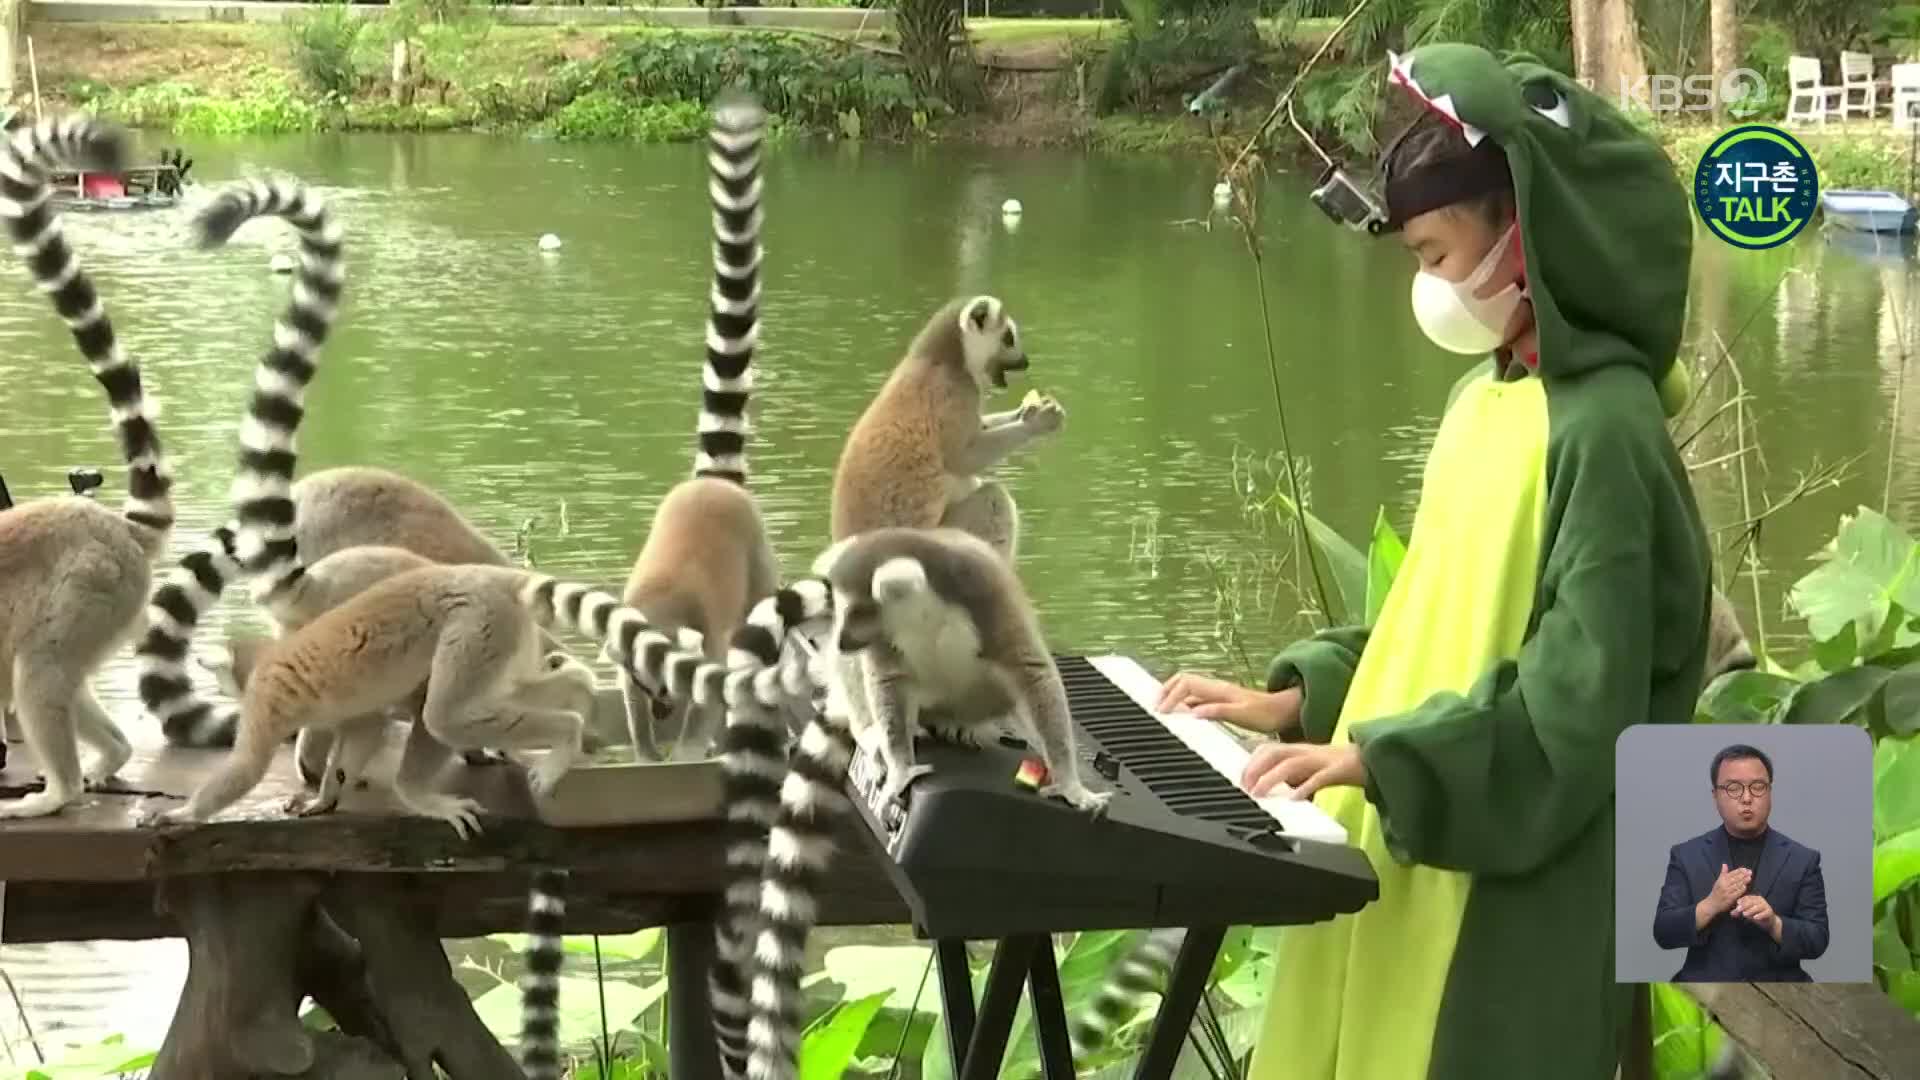 [지구촌 Talk] 태국 동물원의 피아노 연주 관객은 ‘동물들’